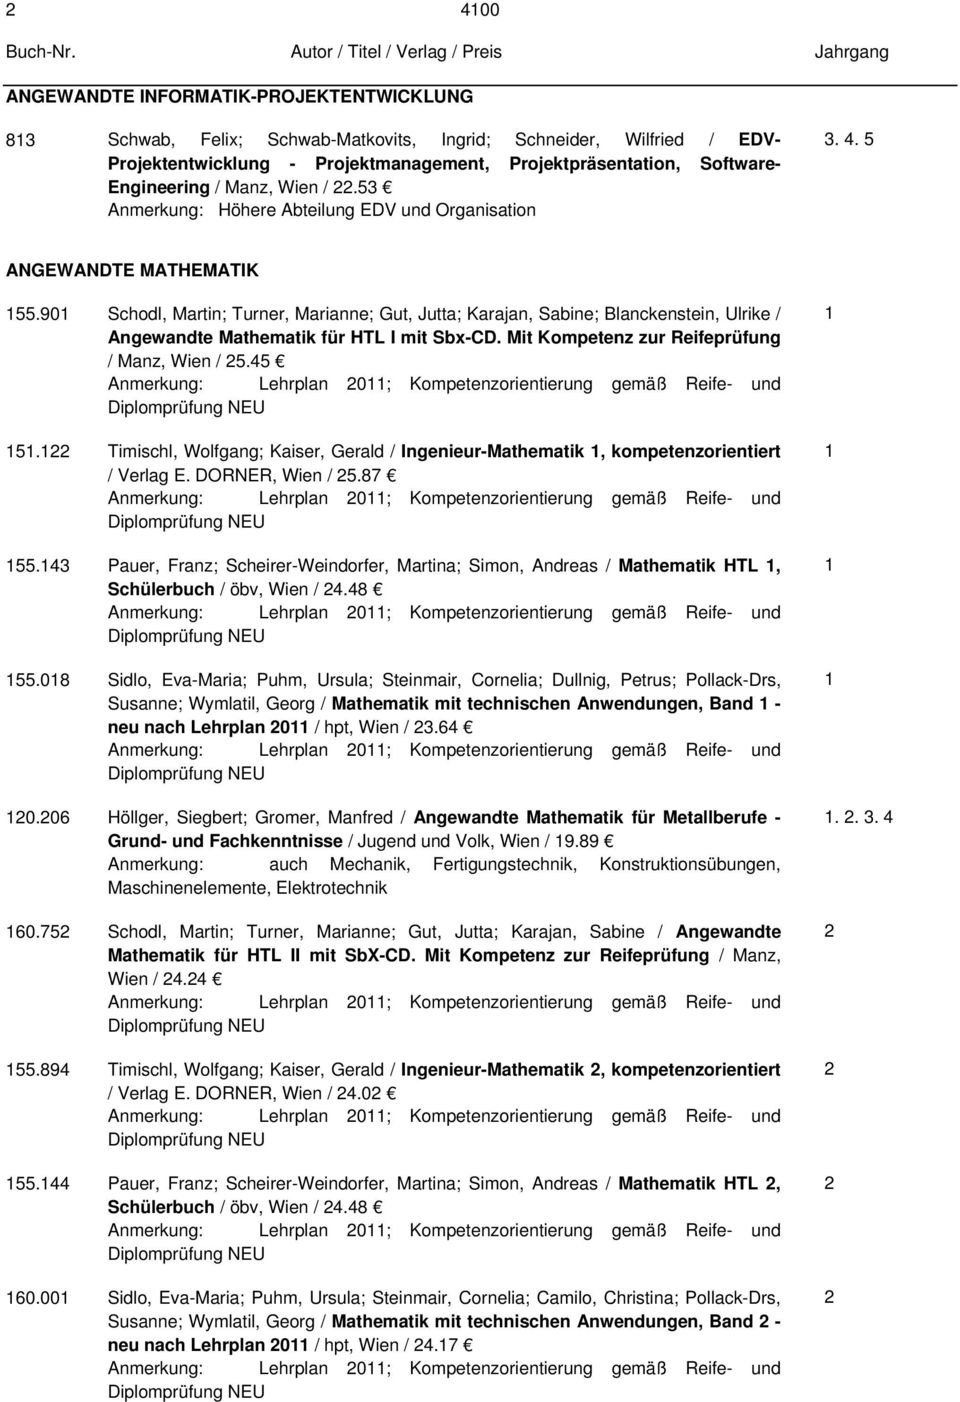 90 Schodl, Martin; Turner, Marianne; Gut, Jutta; Karajan, Sabine; Blanckenstein, Ulrike / Angewandte Mathematik für HTL I mit Sbx-CD. Mit Kompetenz zur Reifeprüfung / Manz, Wien / 5.